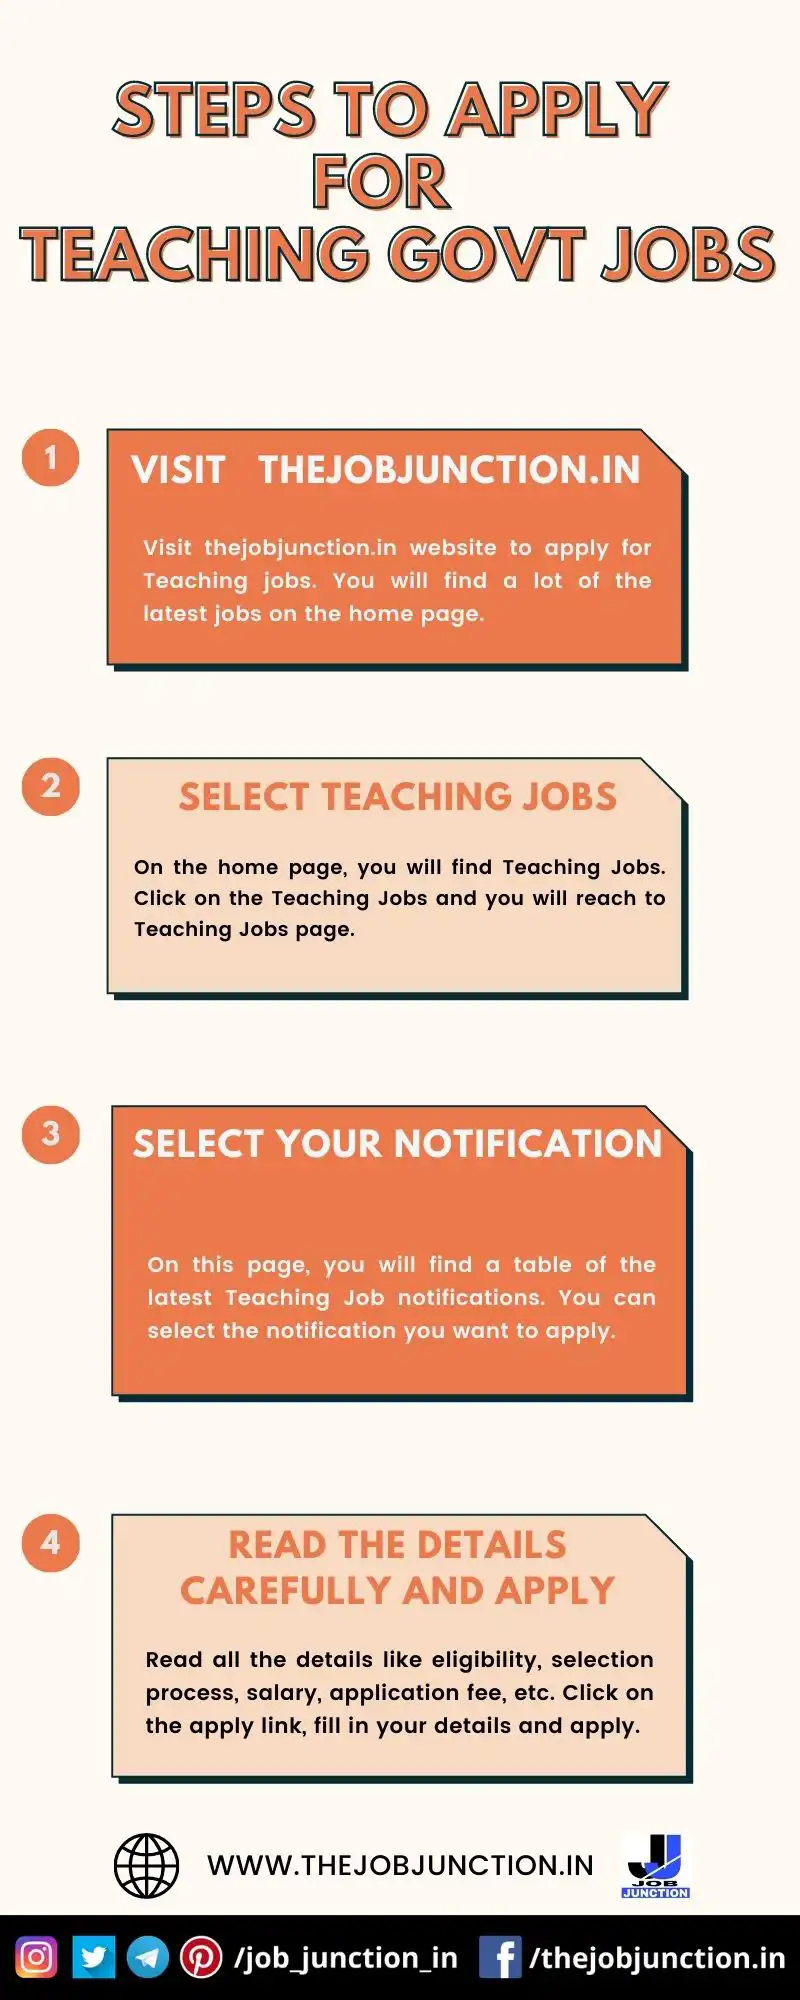 STEPS TO APPLY FOR TEACHING GOVT JOBS